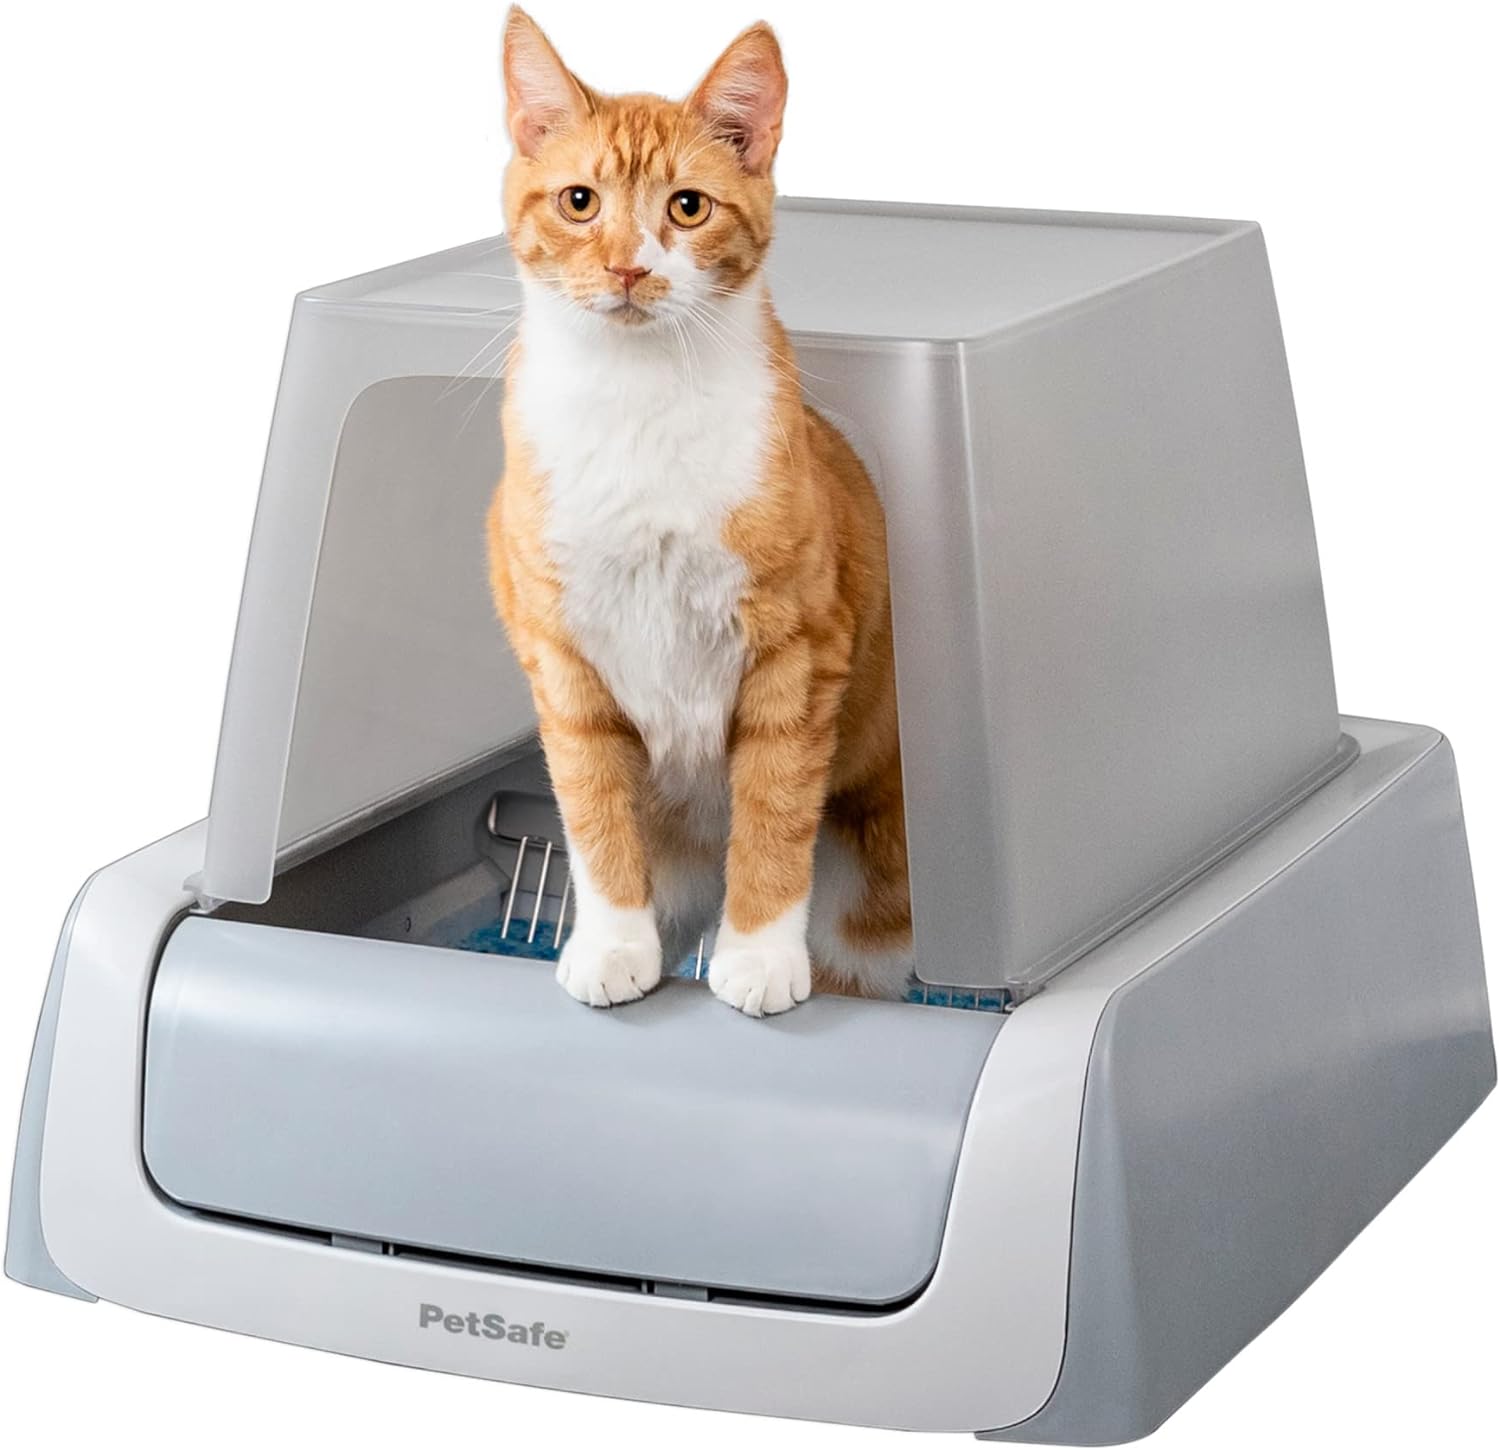 PetSafe Self-Cleaning Cat Litter Box